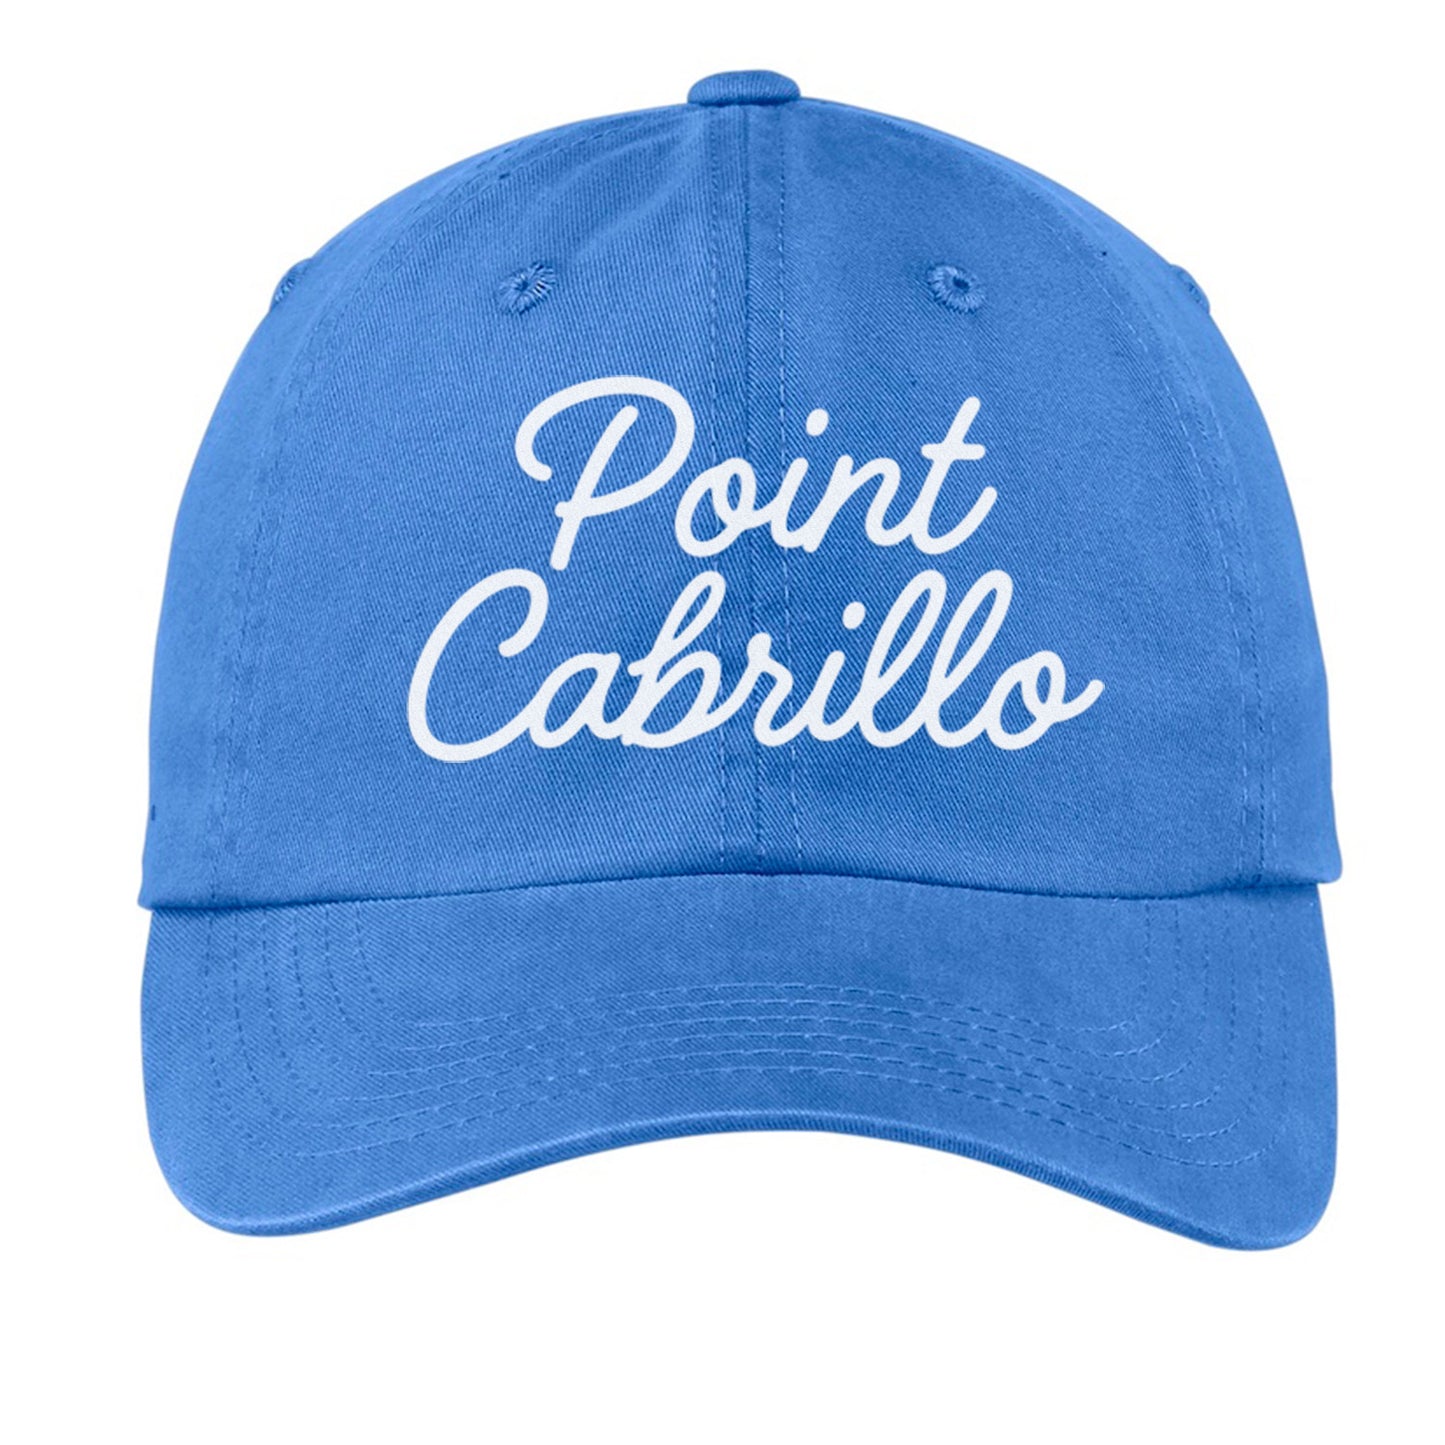 Point Cabrillo Cursive Baseball Cap